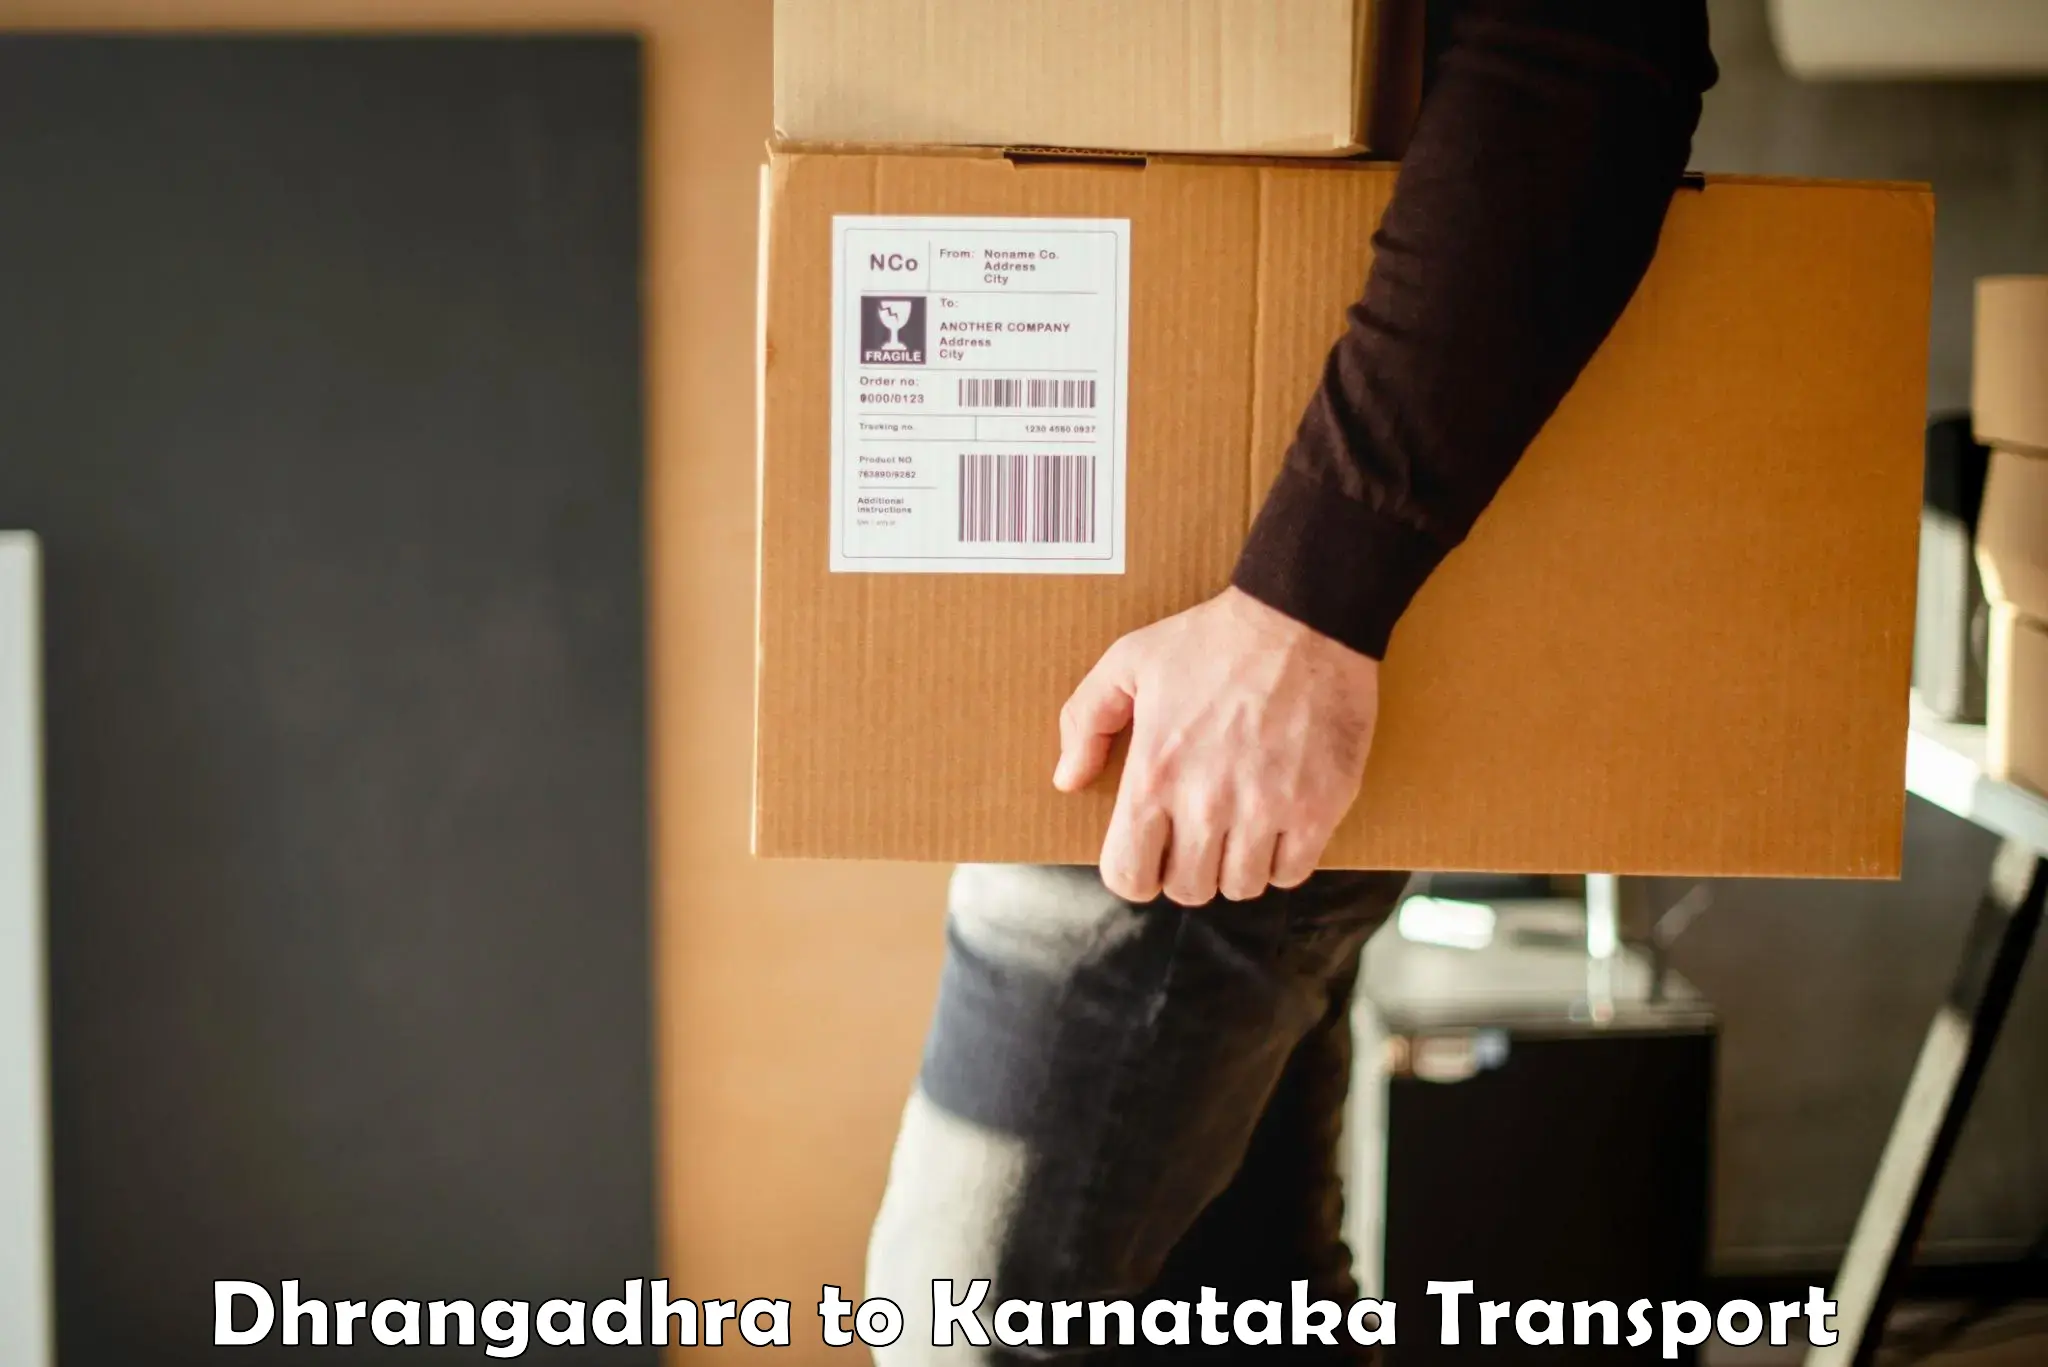 Pick up transport service Dhrangadhra to Karnataka